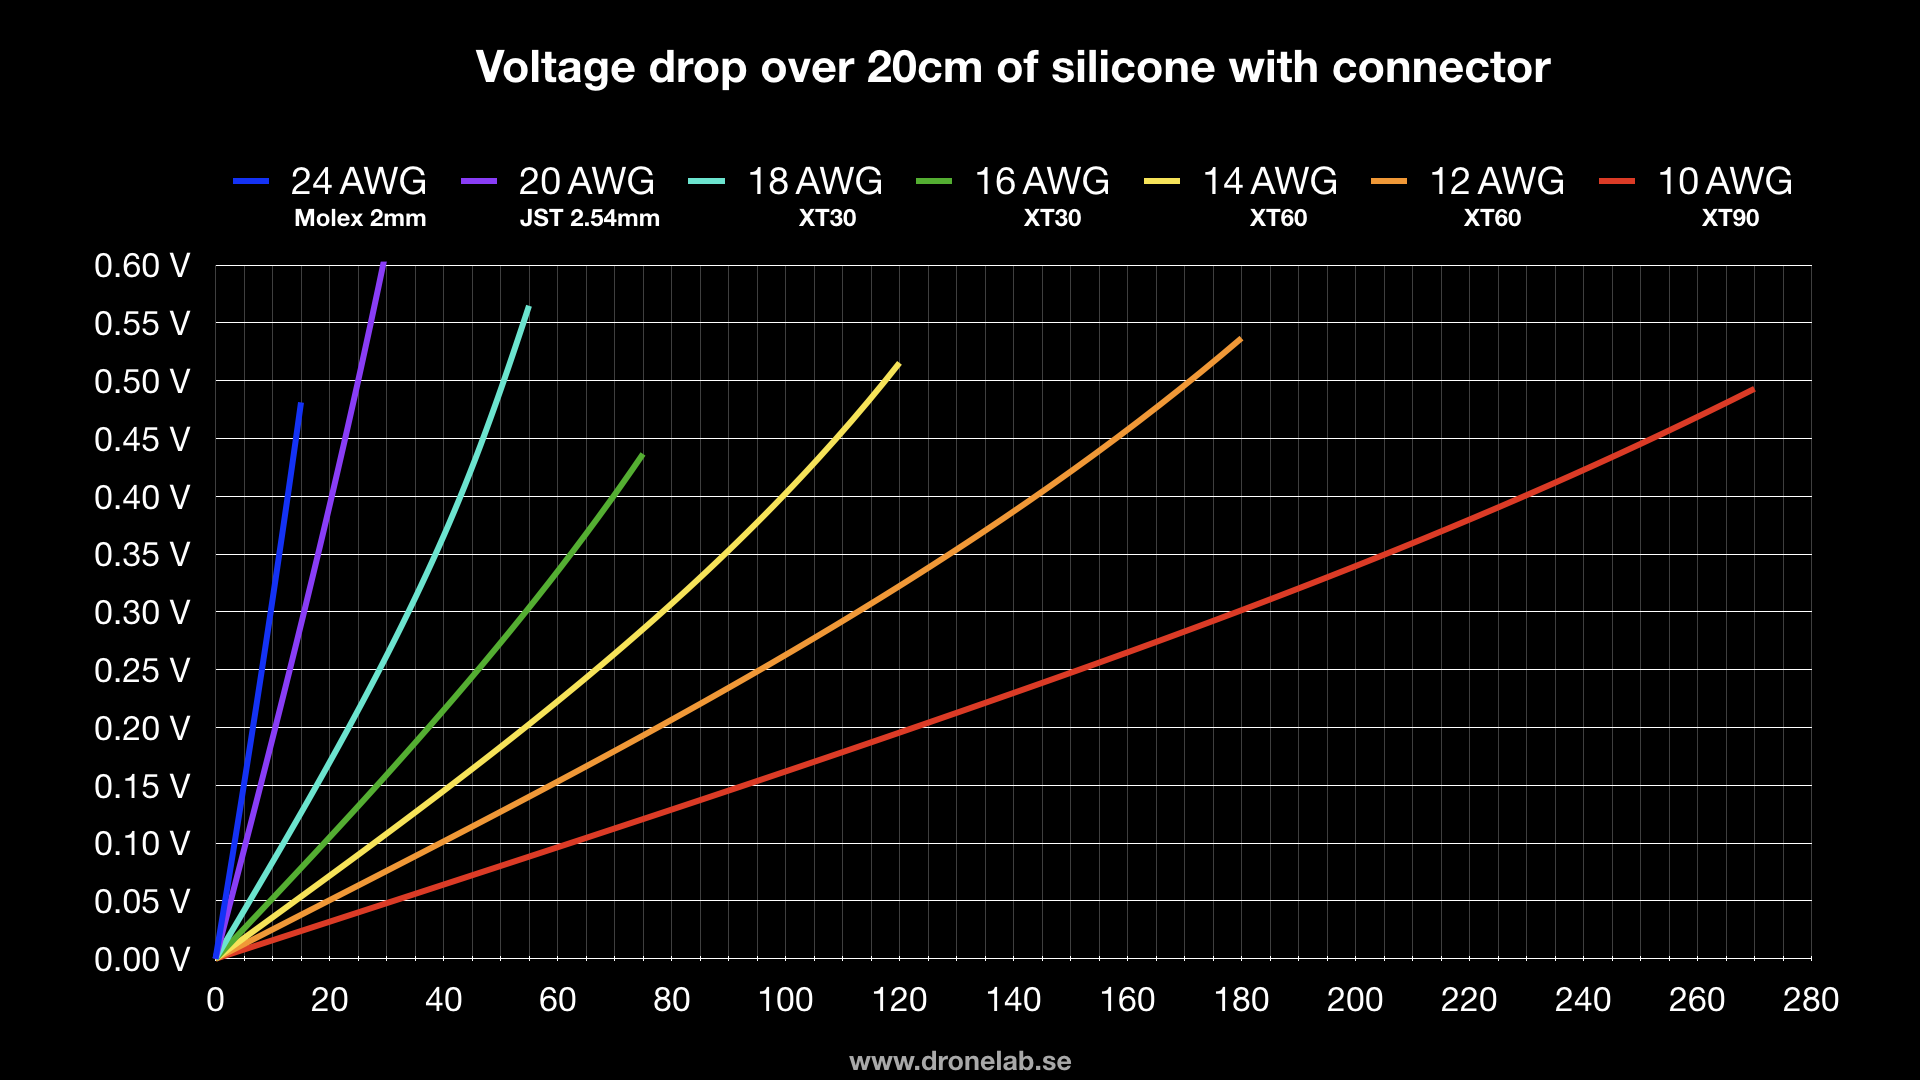 Voltage drop with connectors